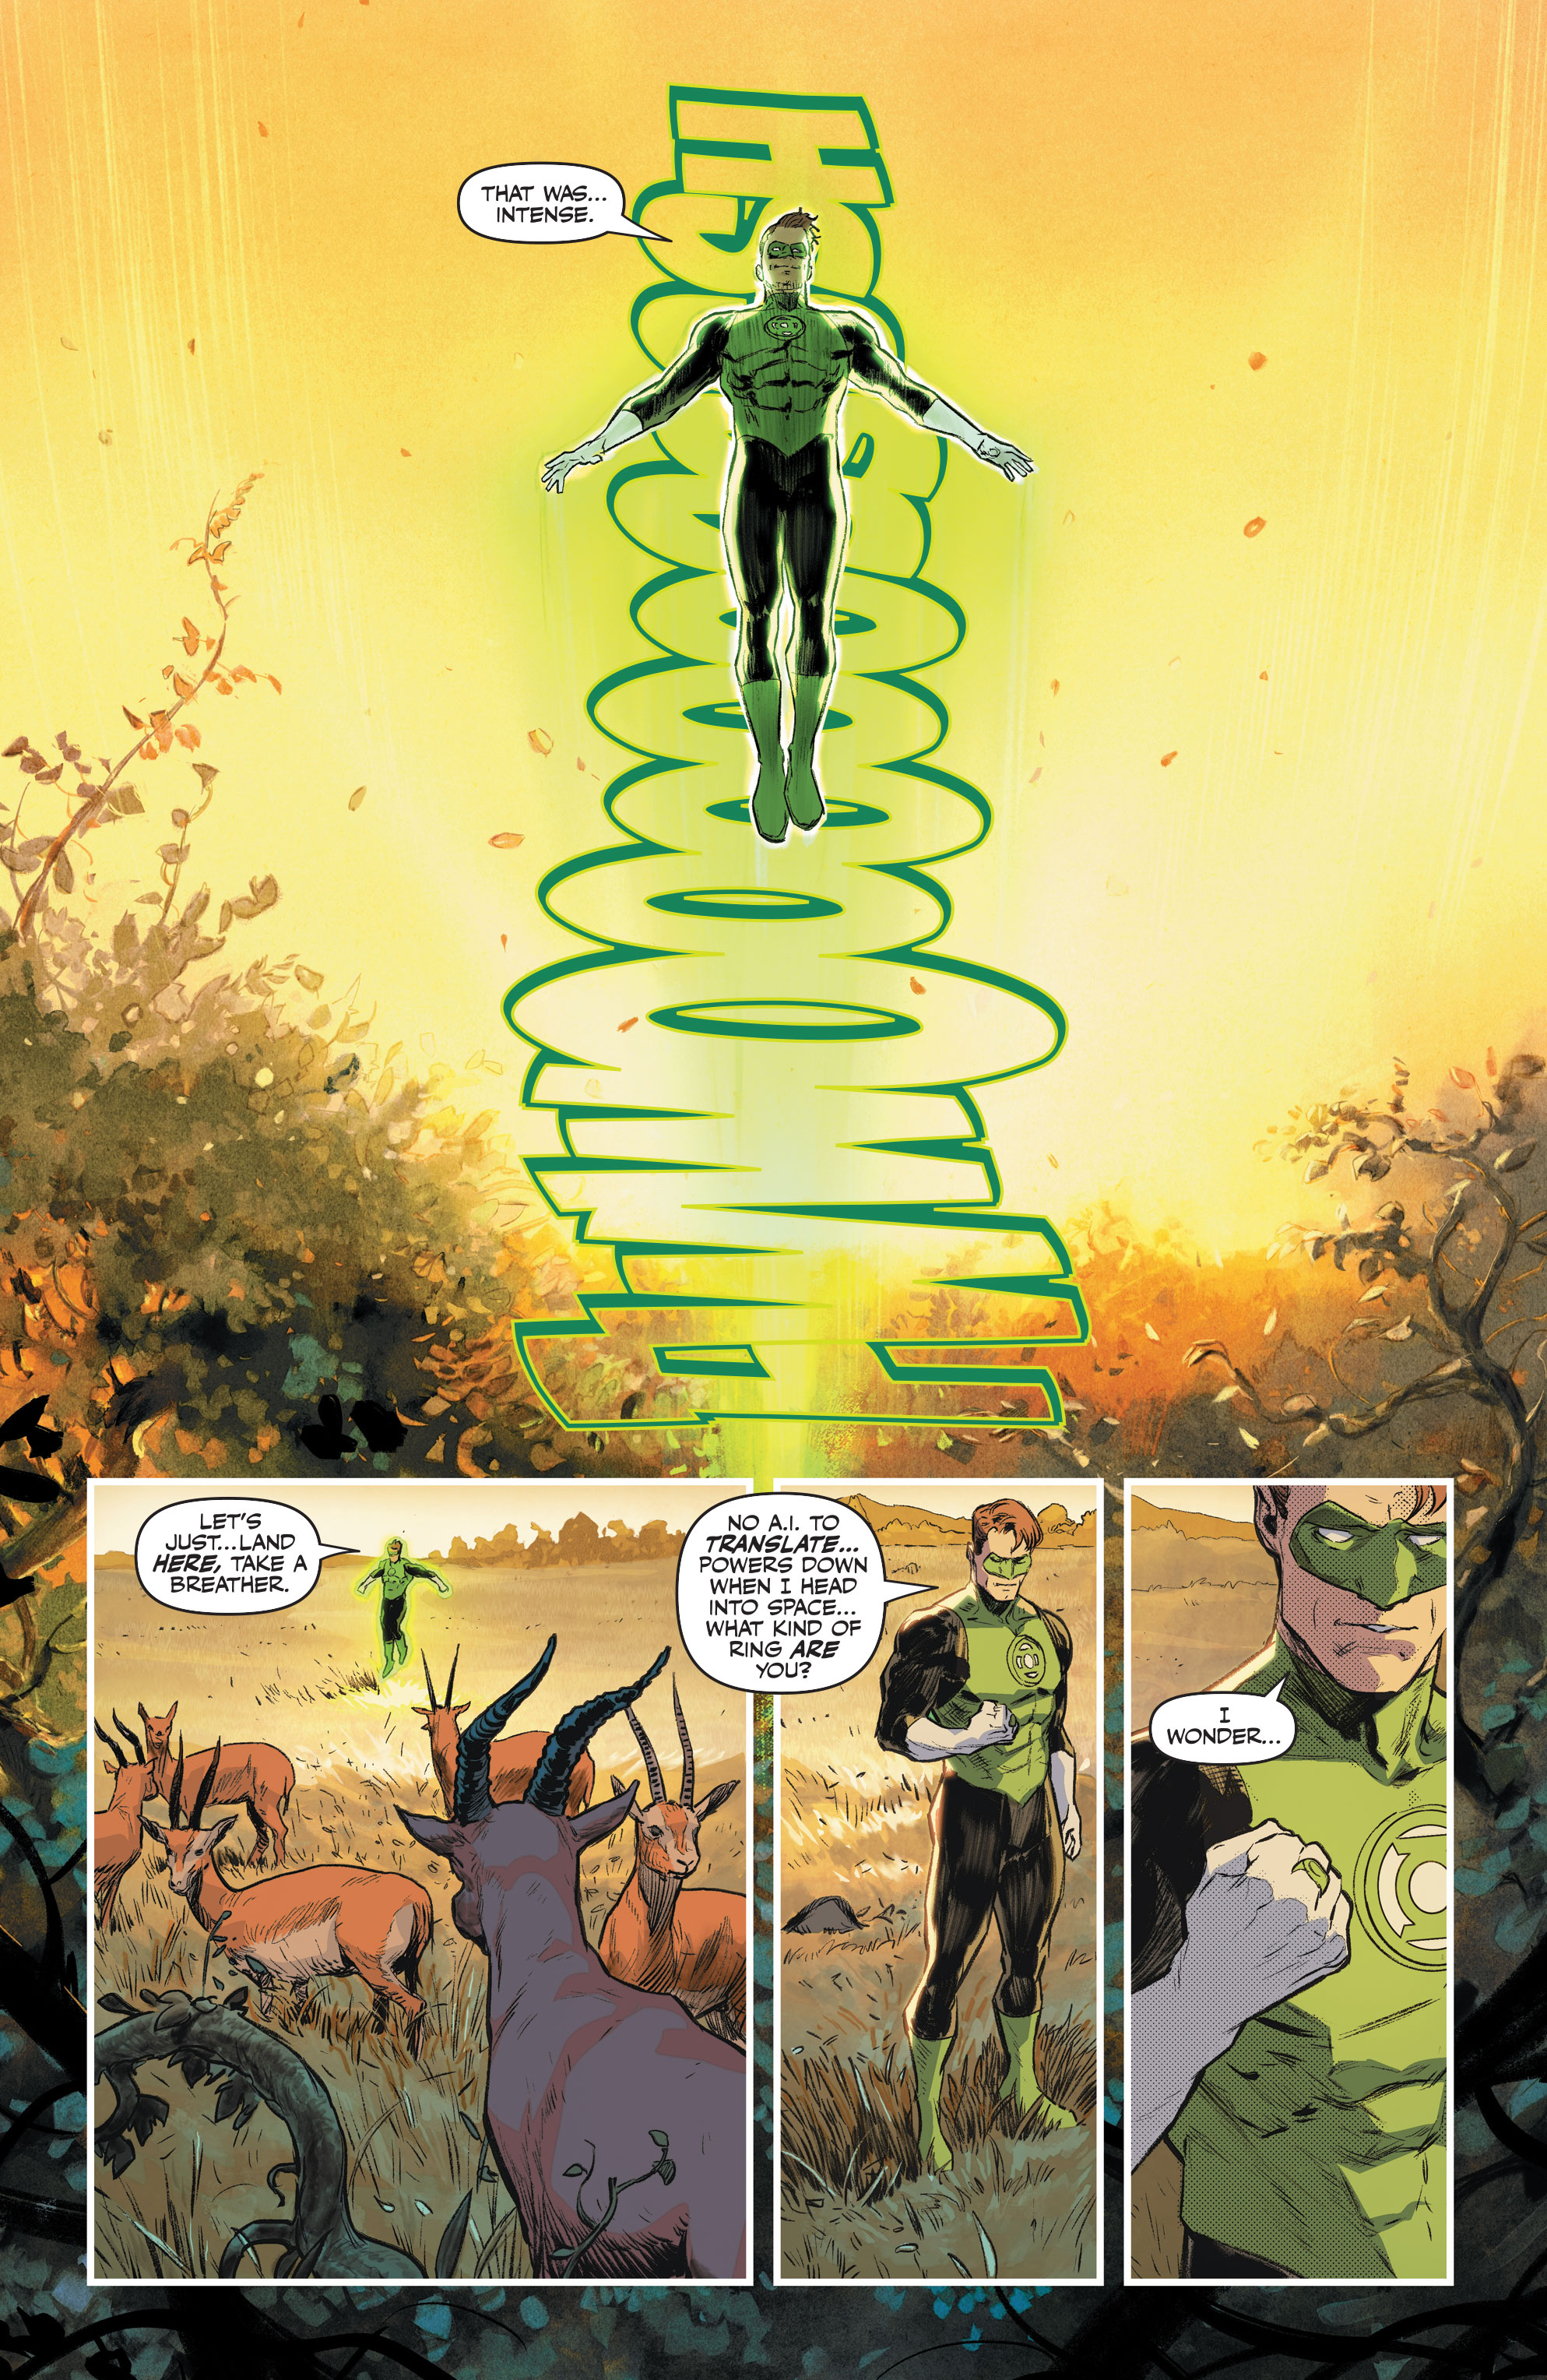 Konst från Green Lantern #3